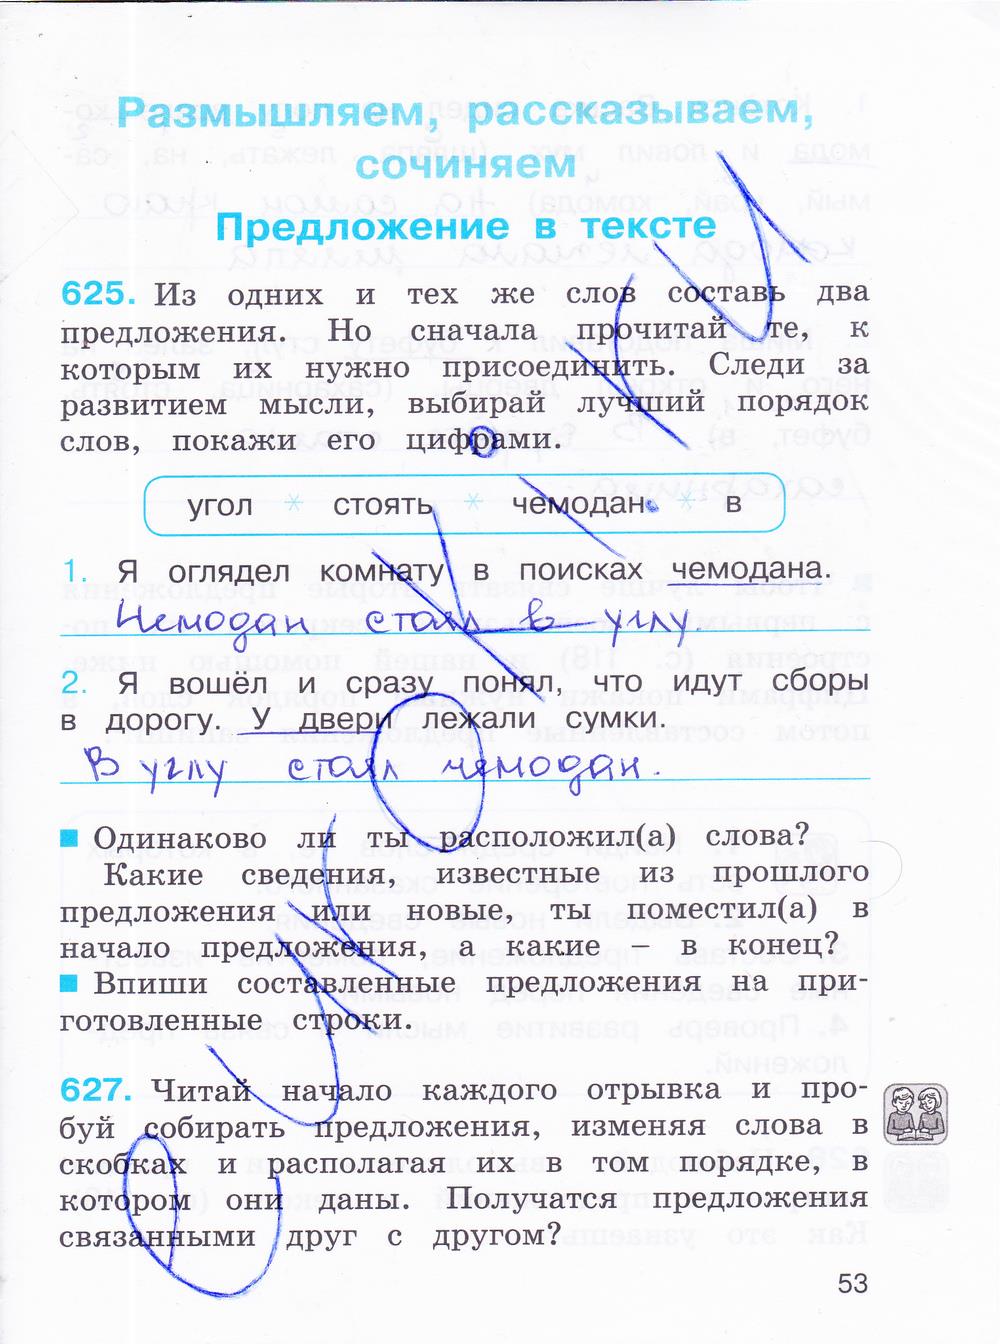 гдз 4 класс рабочая тетрадь часть 3 страница 53 русский язык Соловейчик, Кузьменко